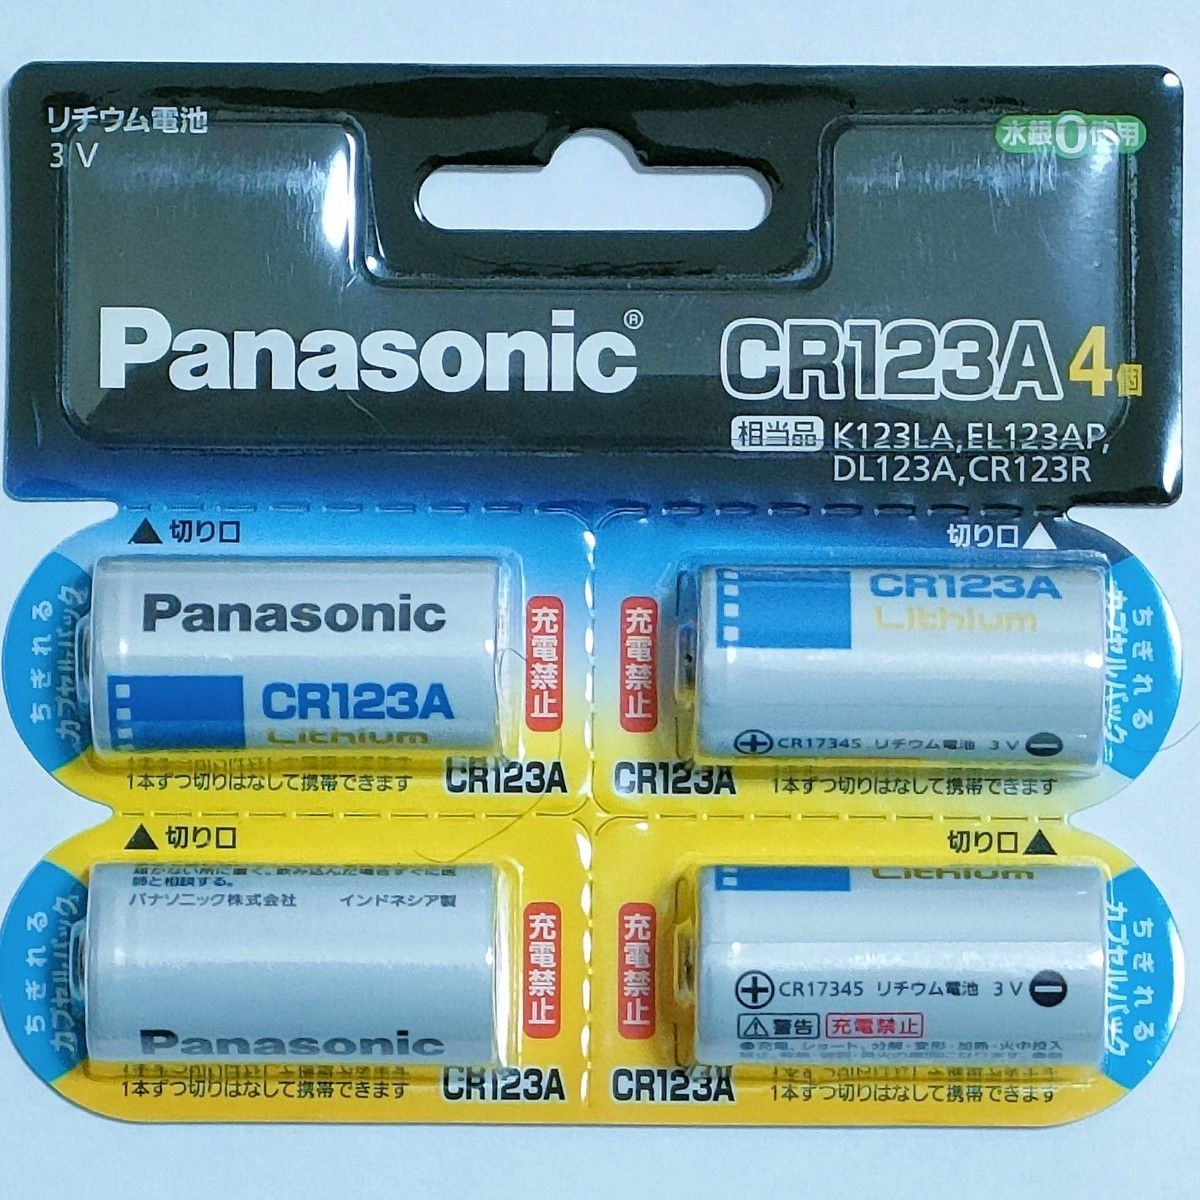 【新品】パナソニック CR-123AW/4P カメラ用リチウム電池 Panasonic